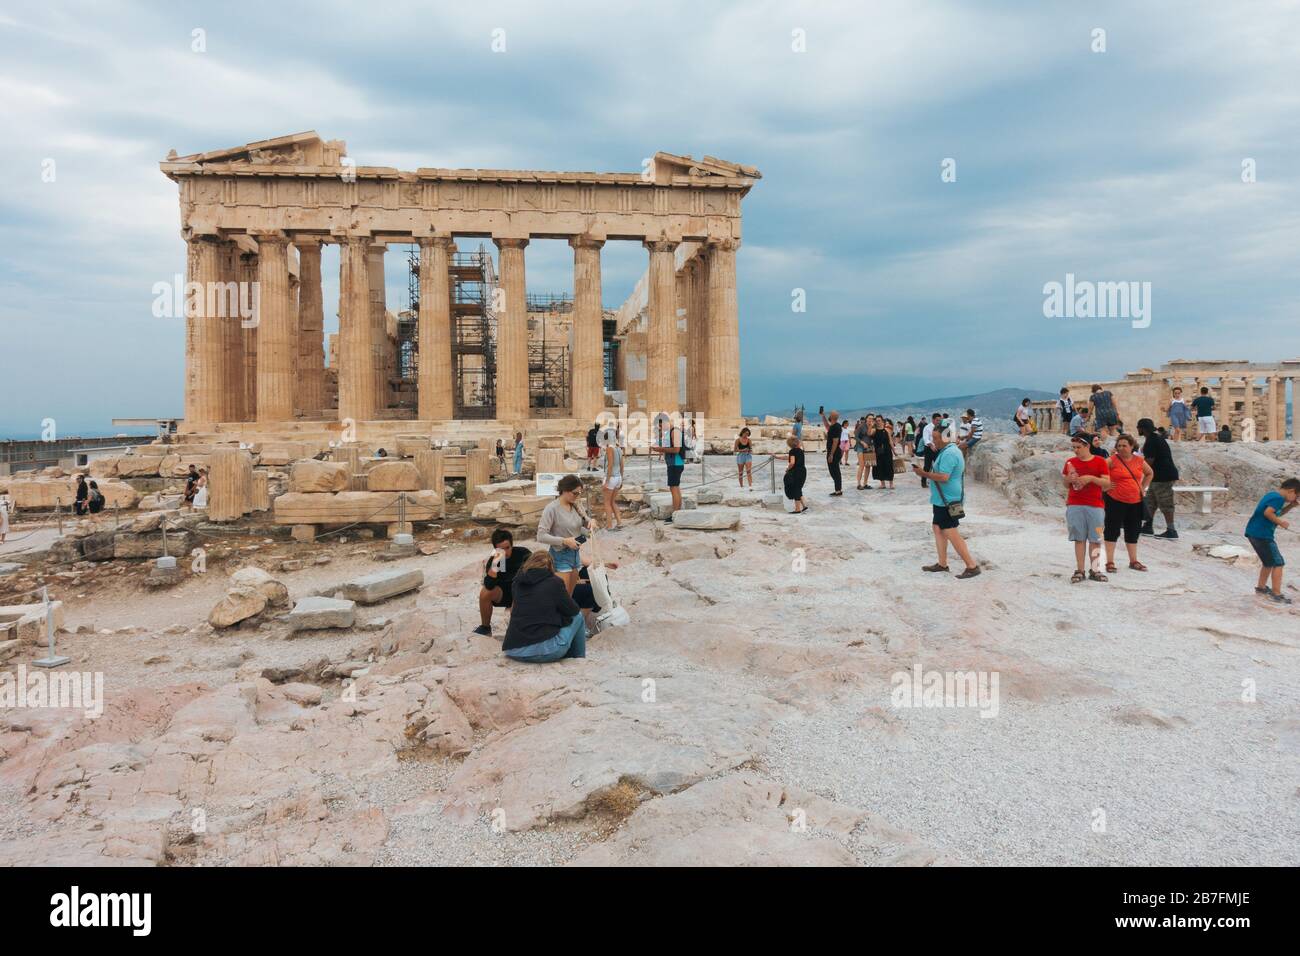 Los turistas toman selfies y fotos en la Acrópolis de Atenas, Grecia Foto de stock